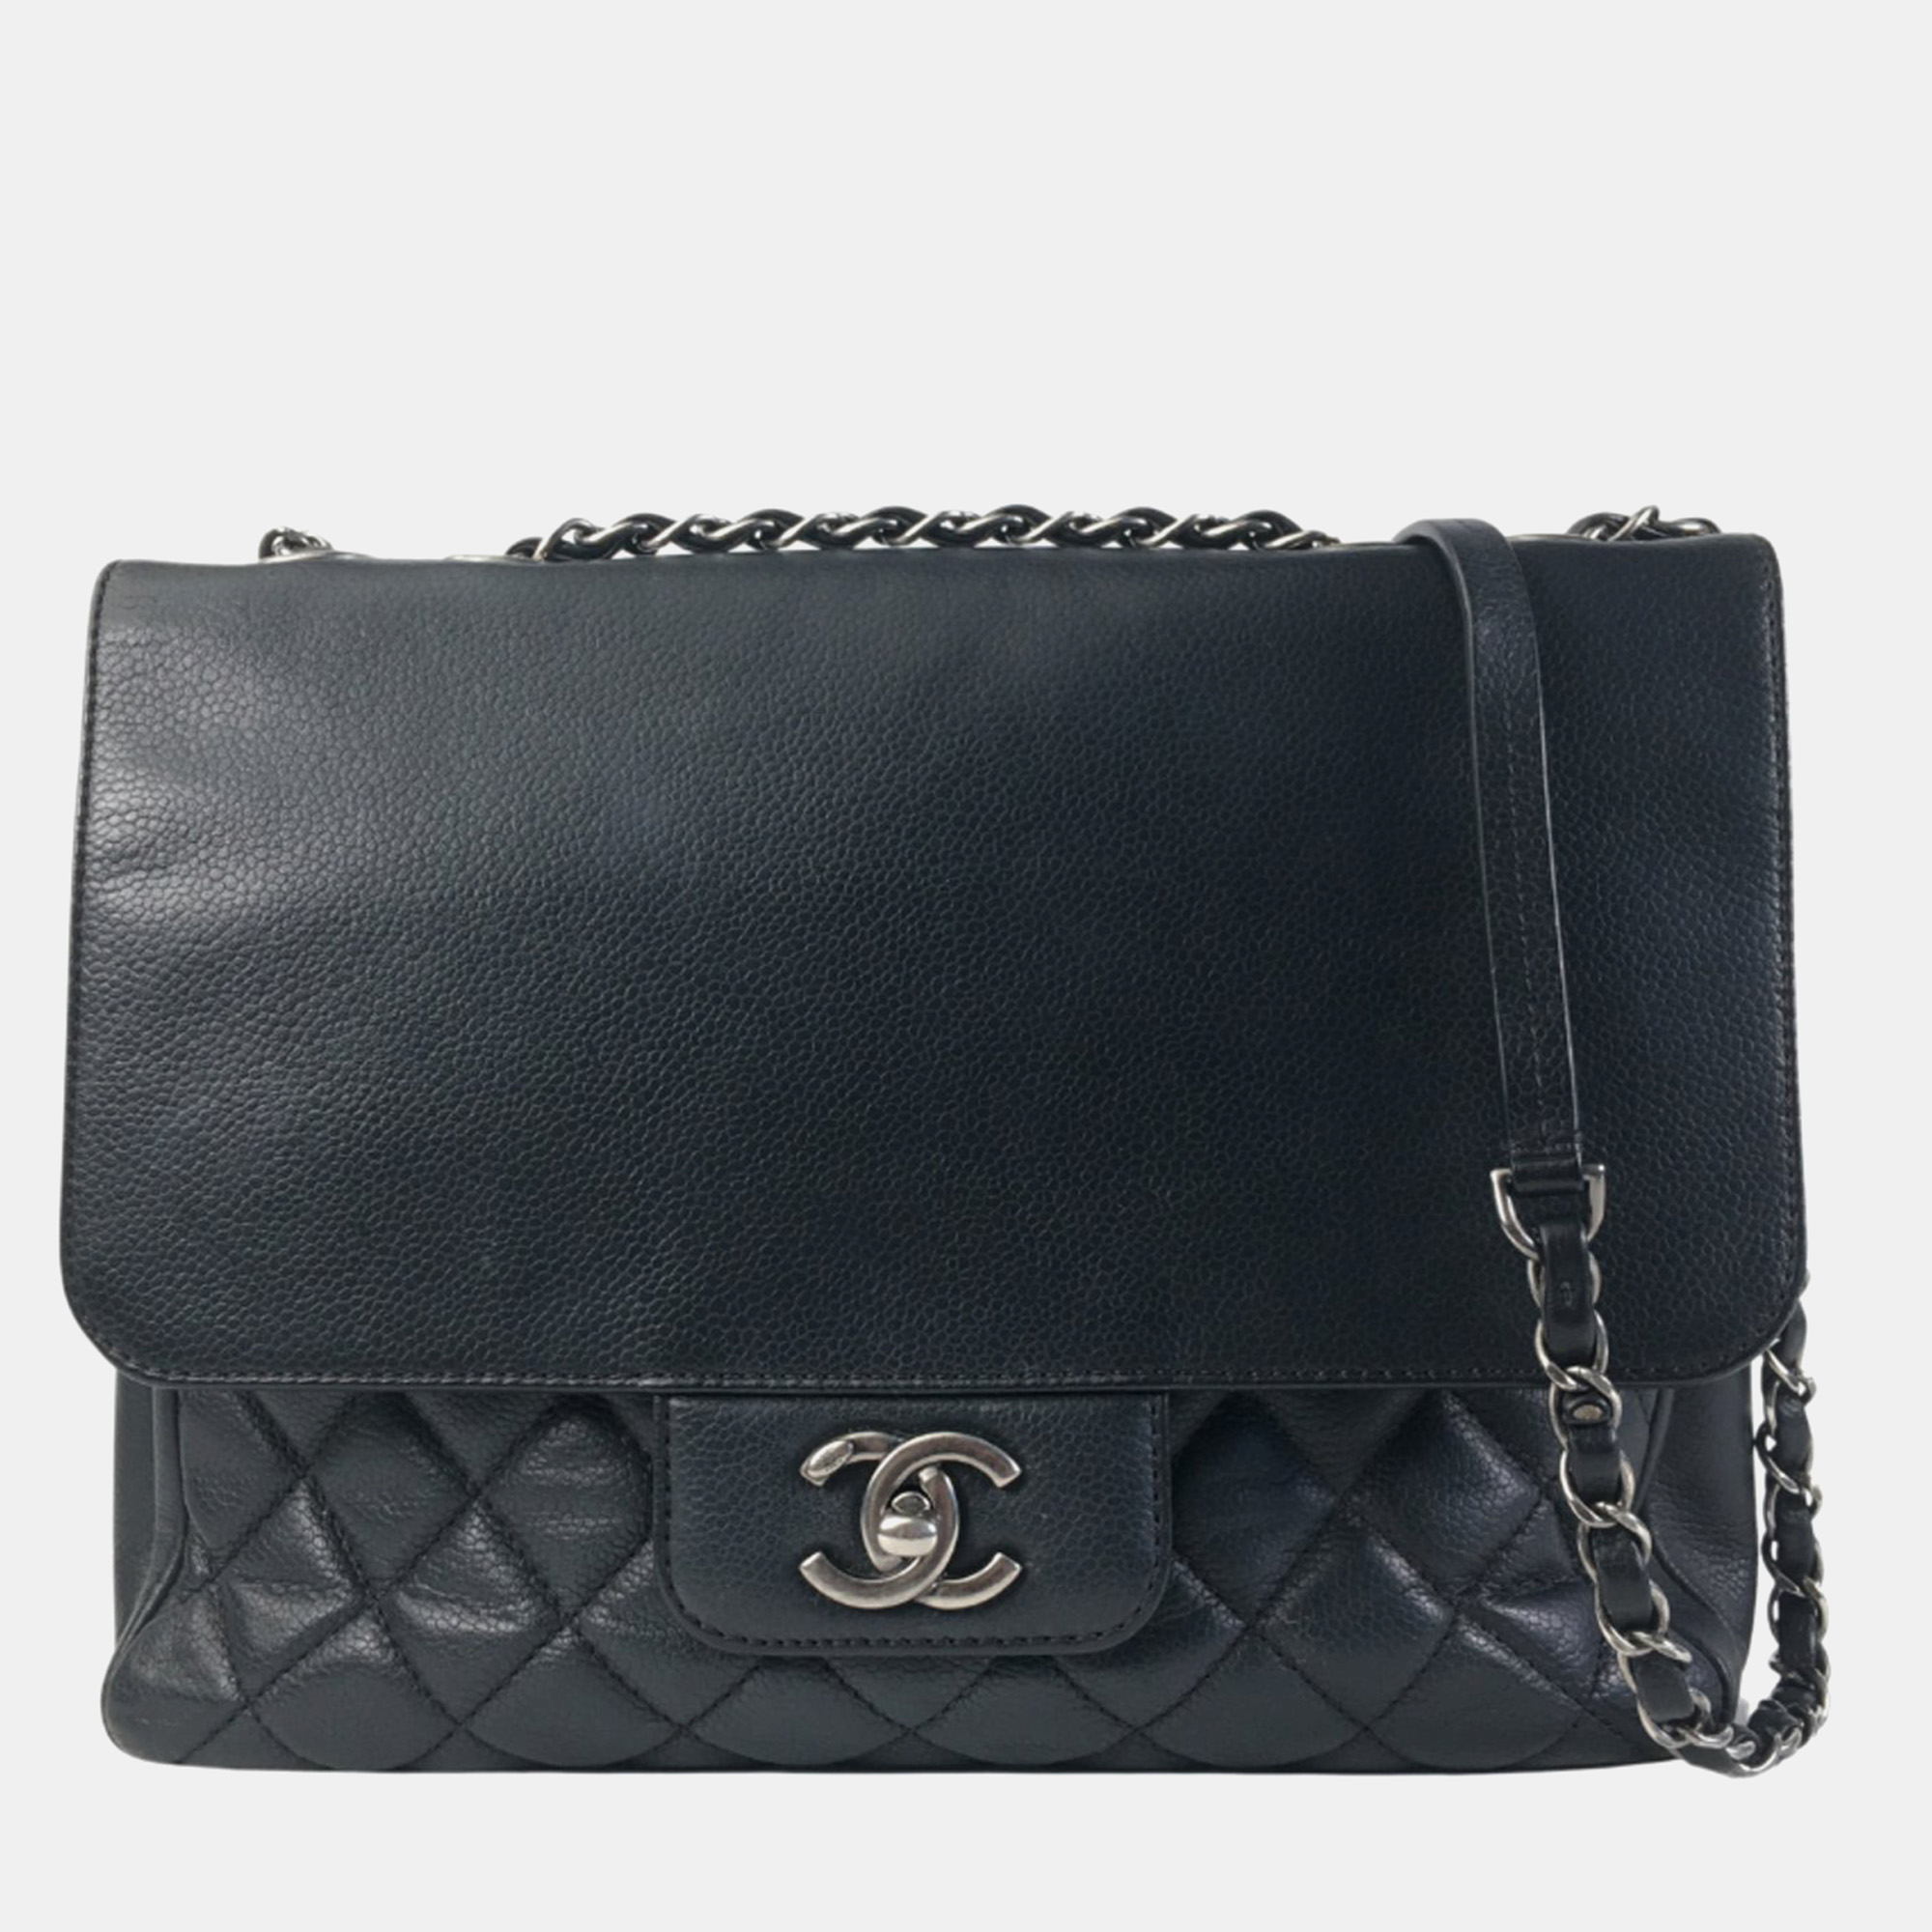 Chanel black leather flap shoulder bag